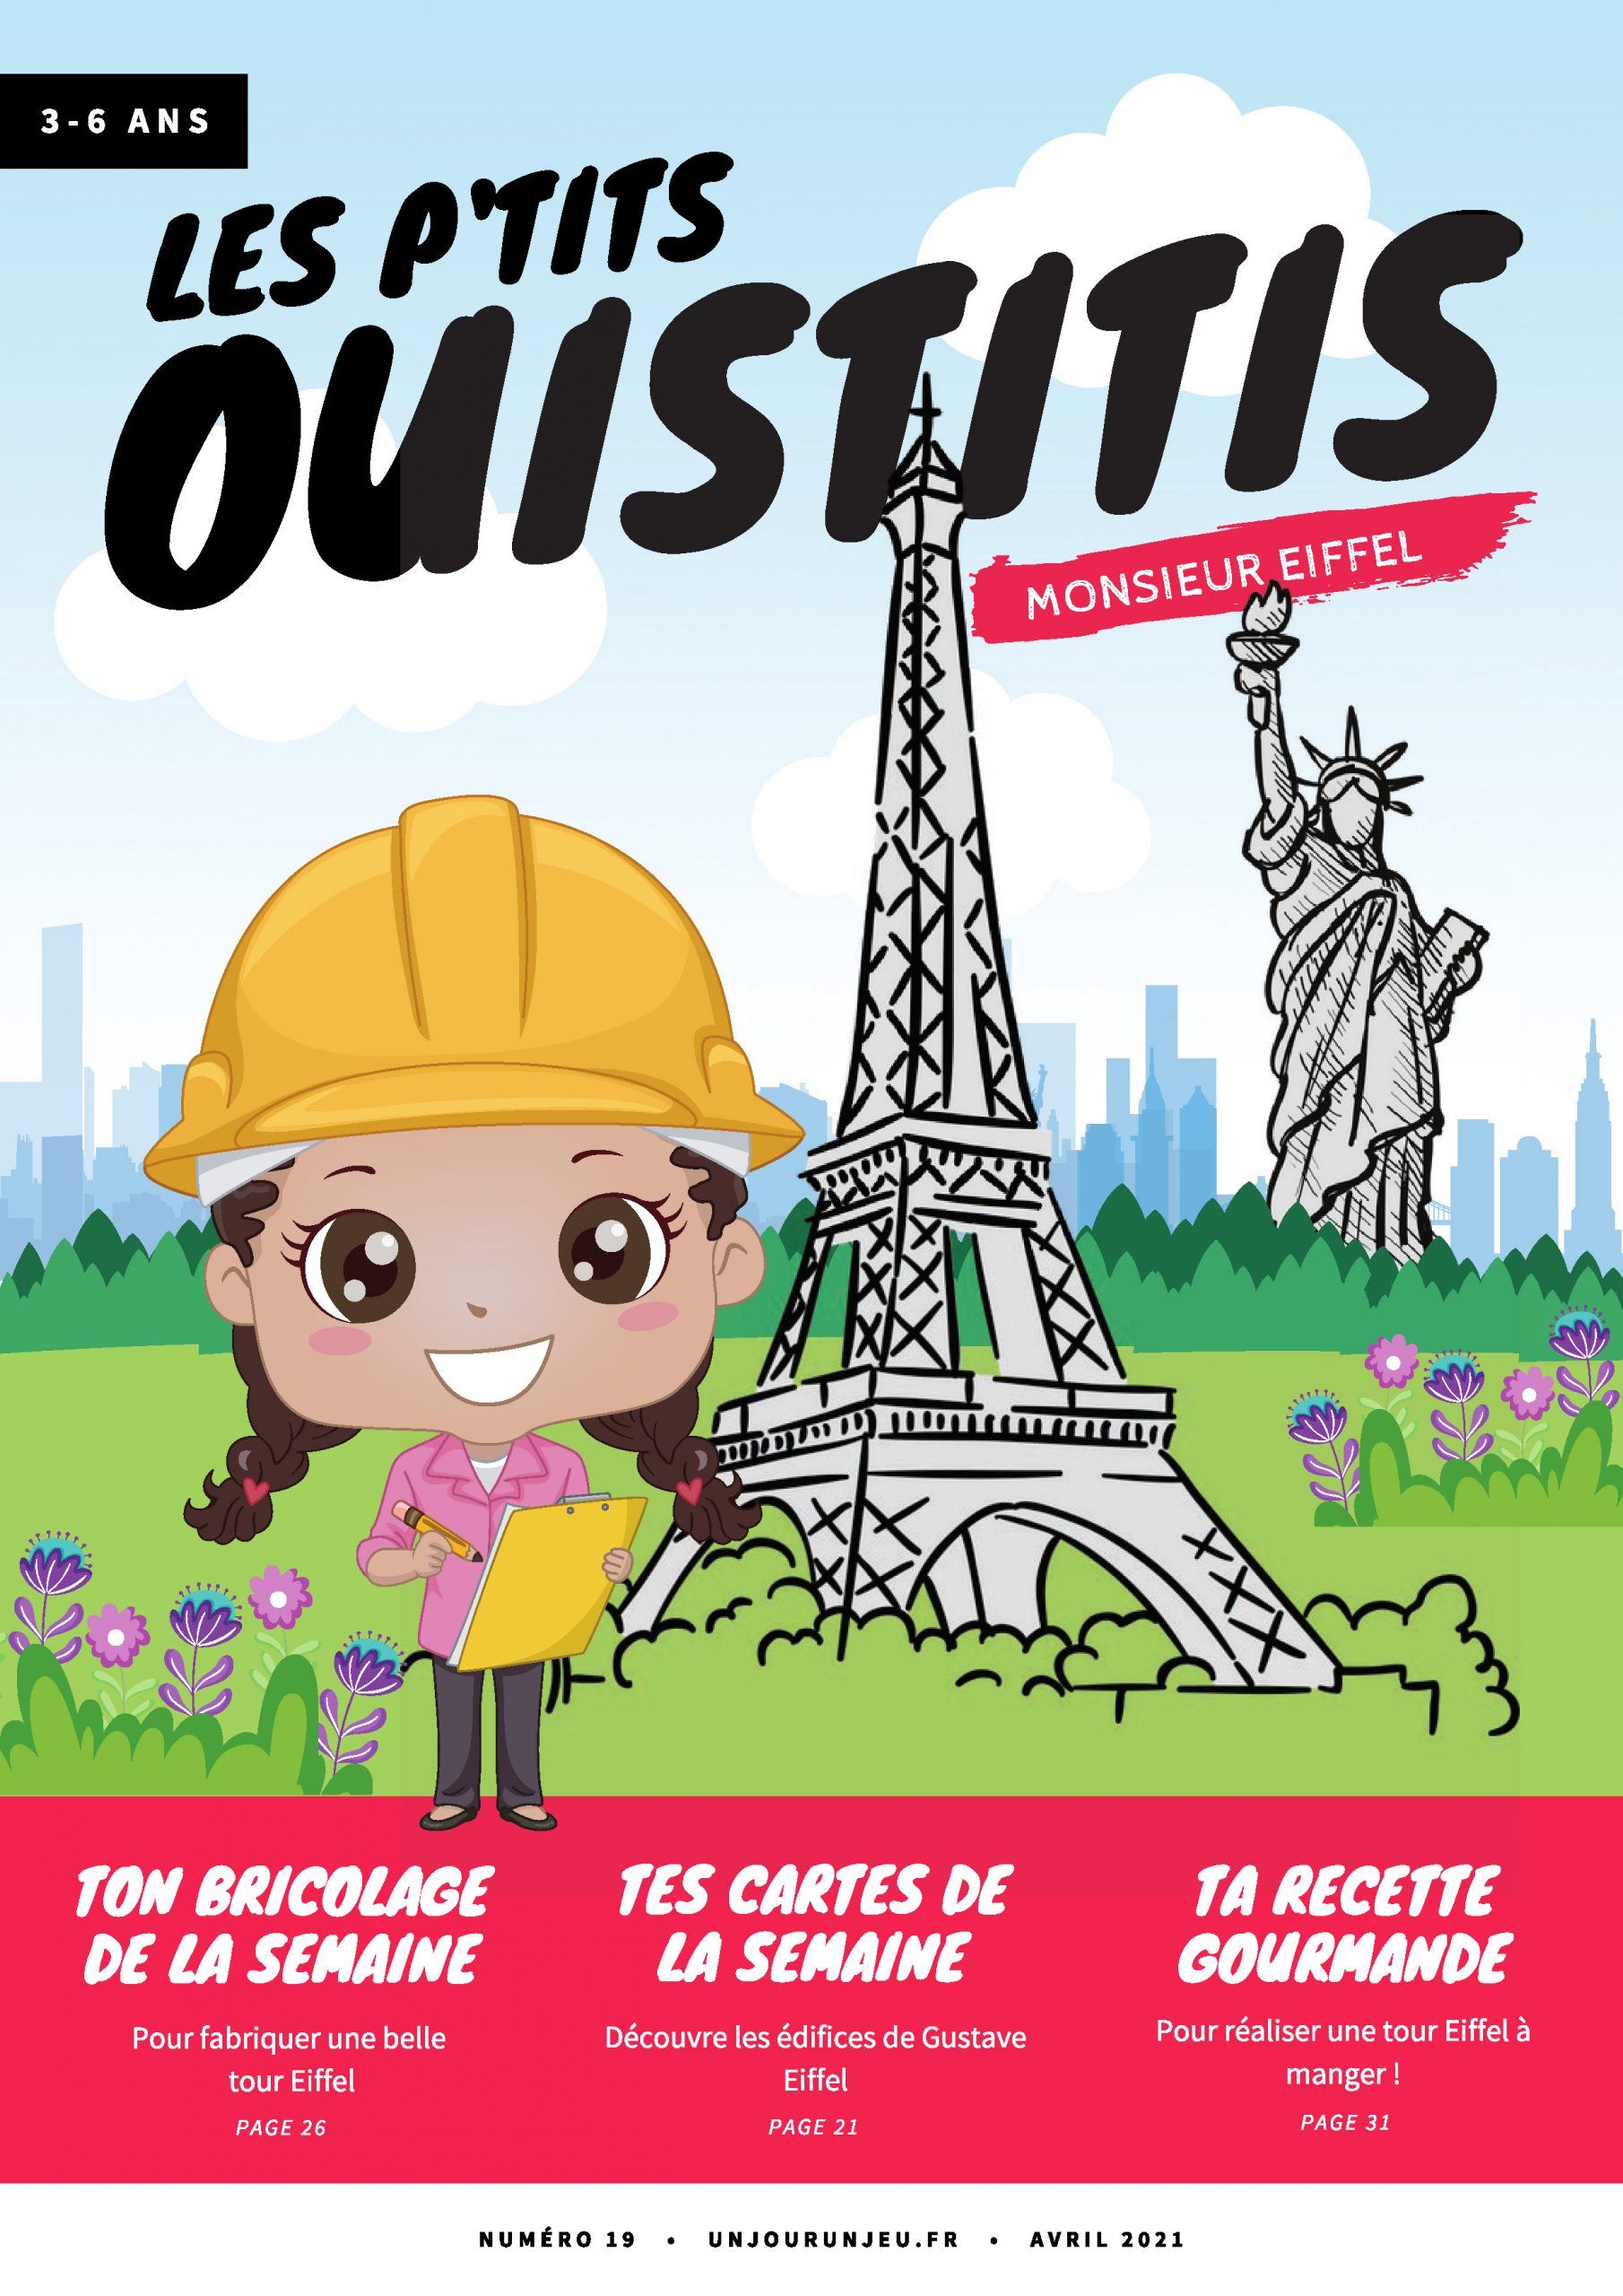 Les P’tits Ouistitis et Gustave Eiffel